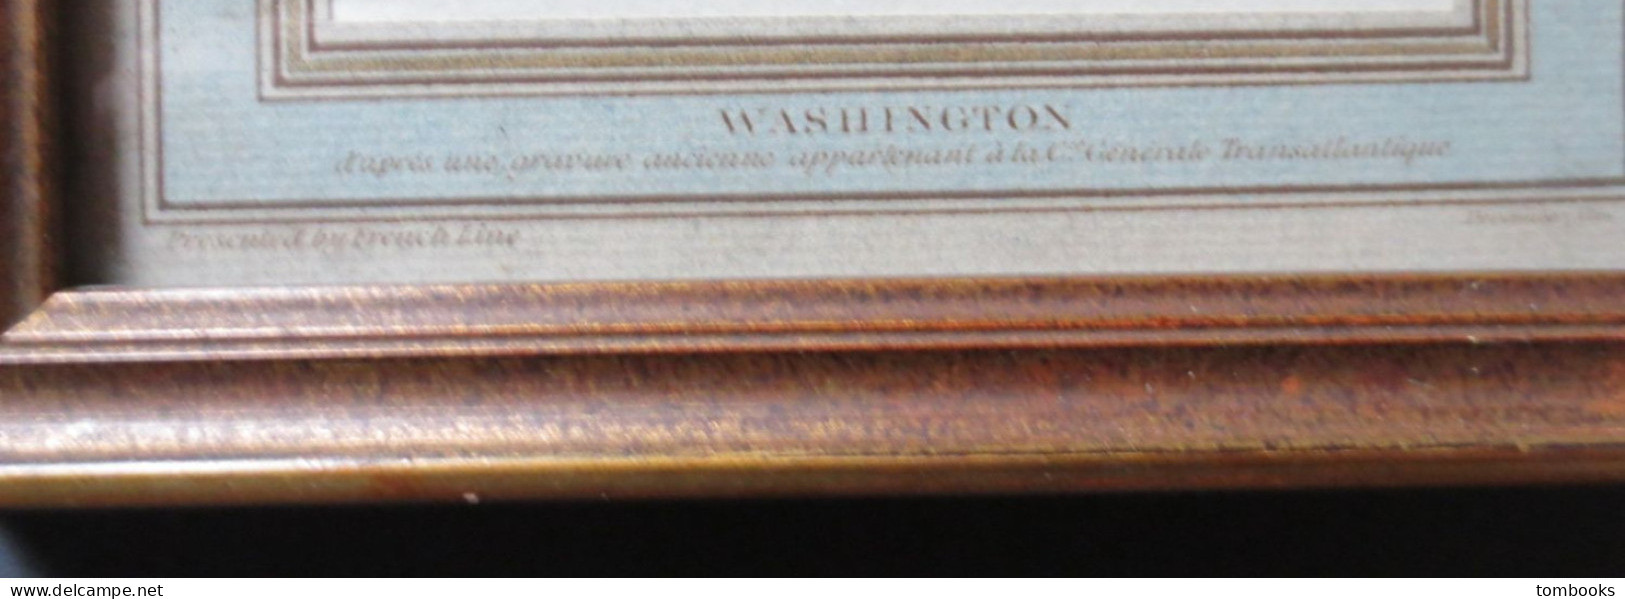 French Line - George Washington - Gravure Pour Paquebot " SS Washington " D'après Gravure Ancienne CGT - TBE - - Maritime Dekoration